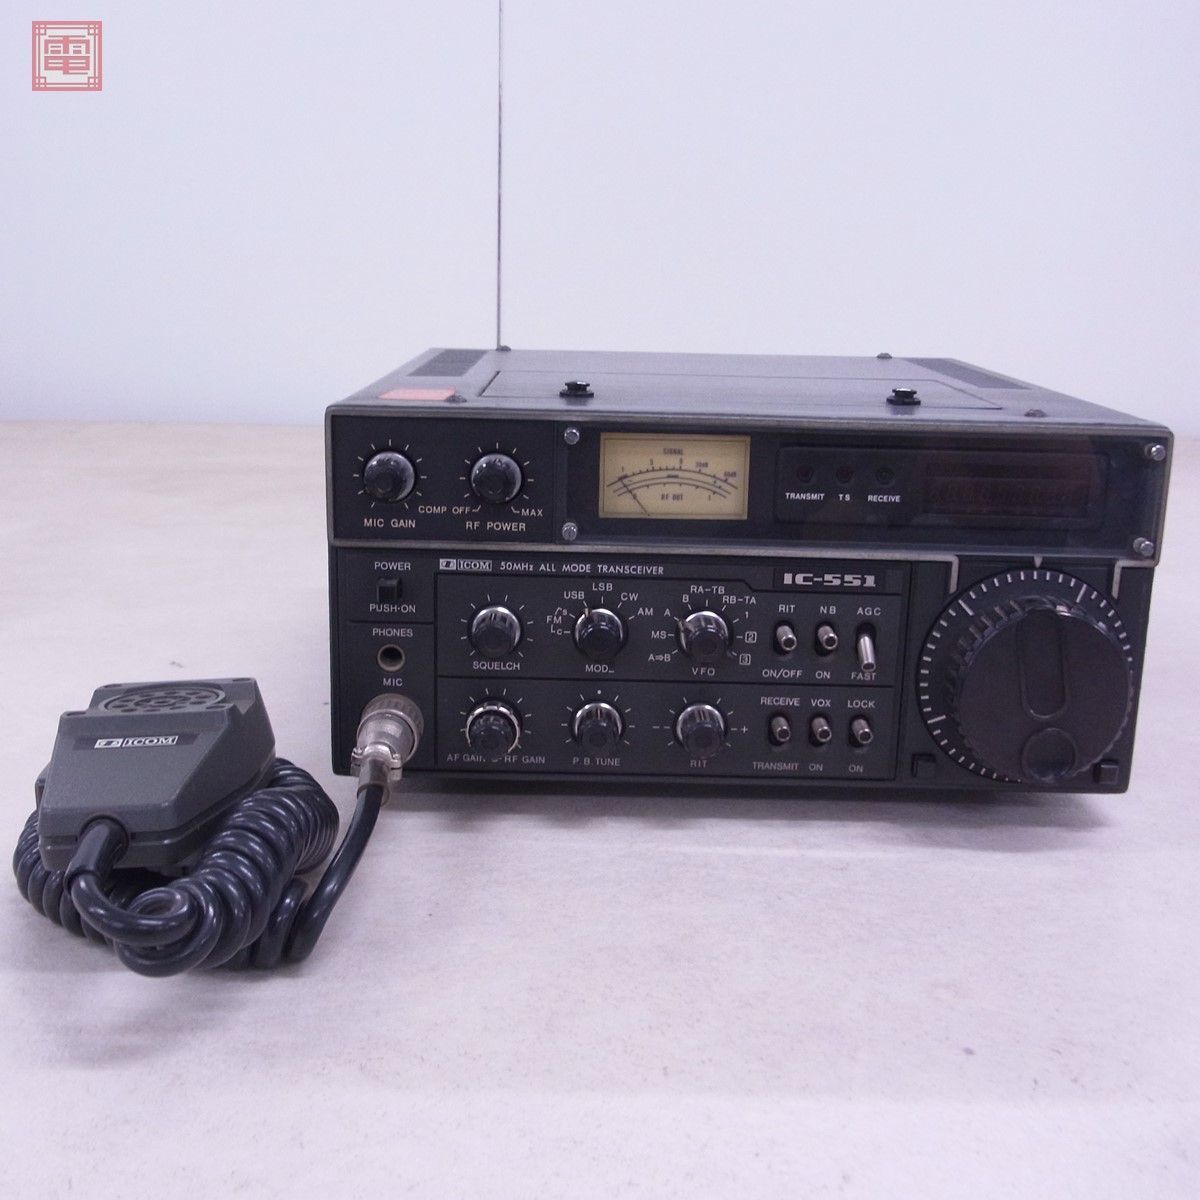 正規品販売中 50MHZオールモードトランシーバー ICOM IC-551 FMユニット付き アマチュア無線